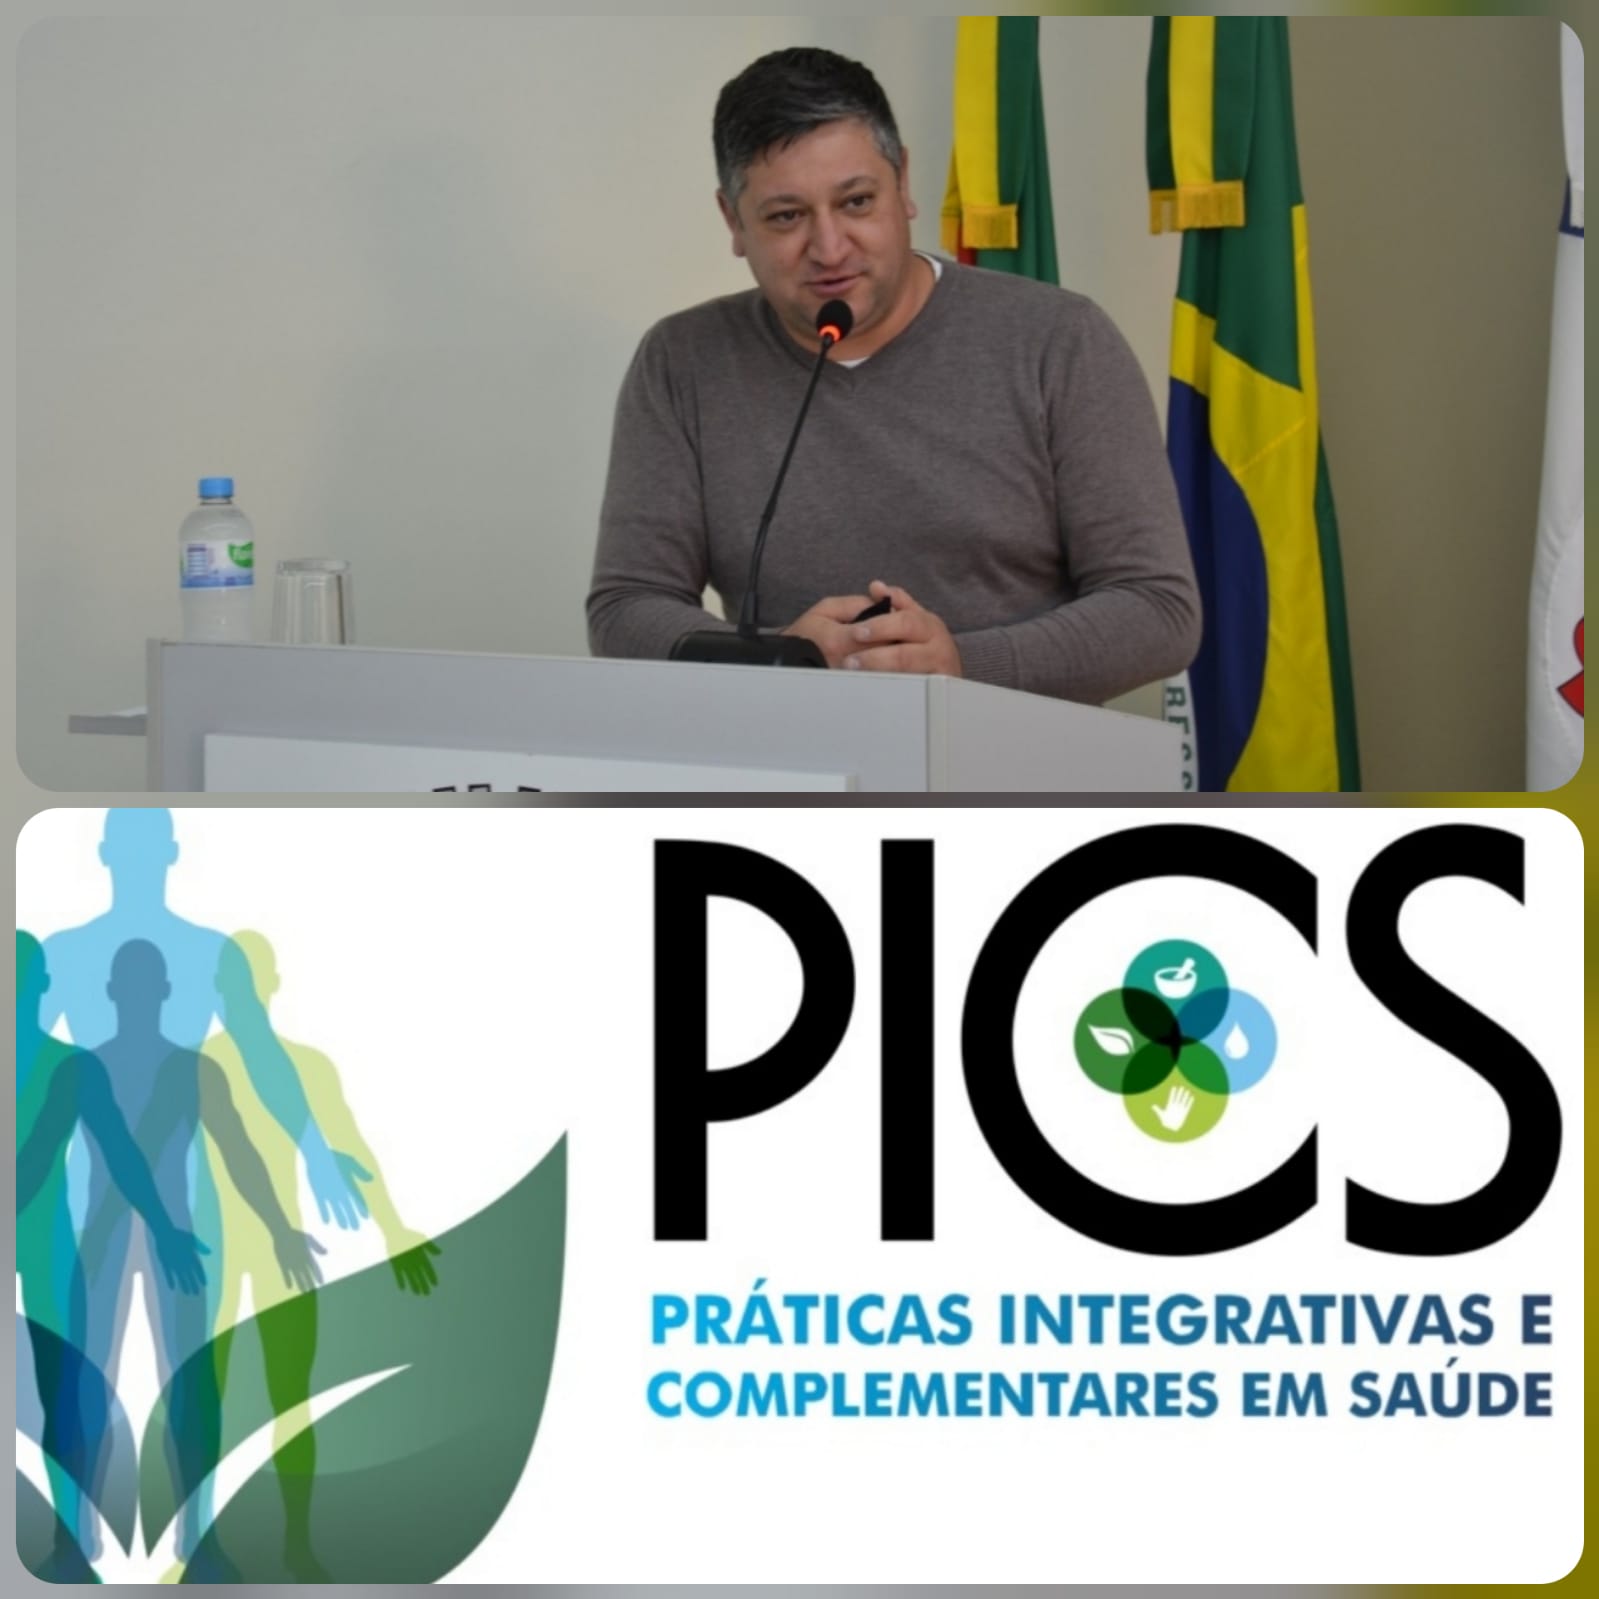 Diego solicita a implantação de um ambulatório de Práticas Integrativas e Complementares em Saúde